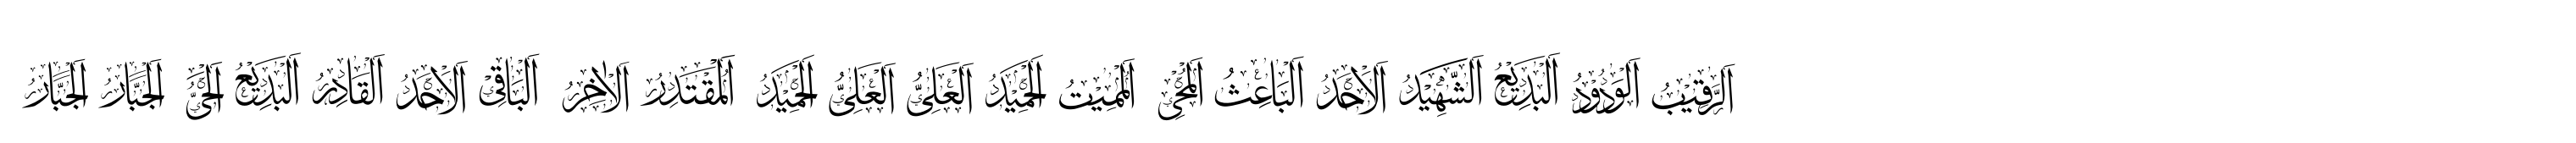 99 Names of ALLAH Elegant